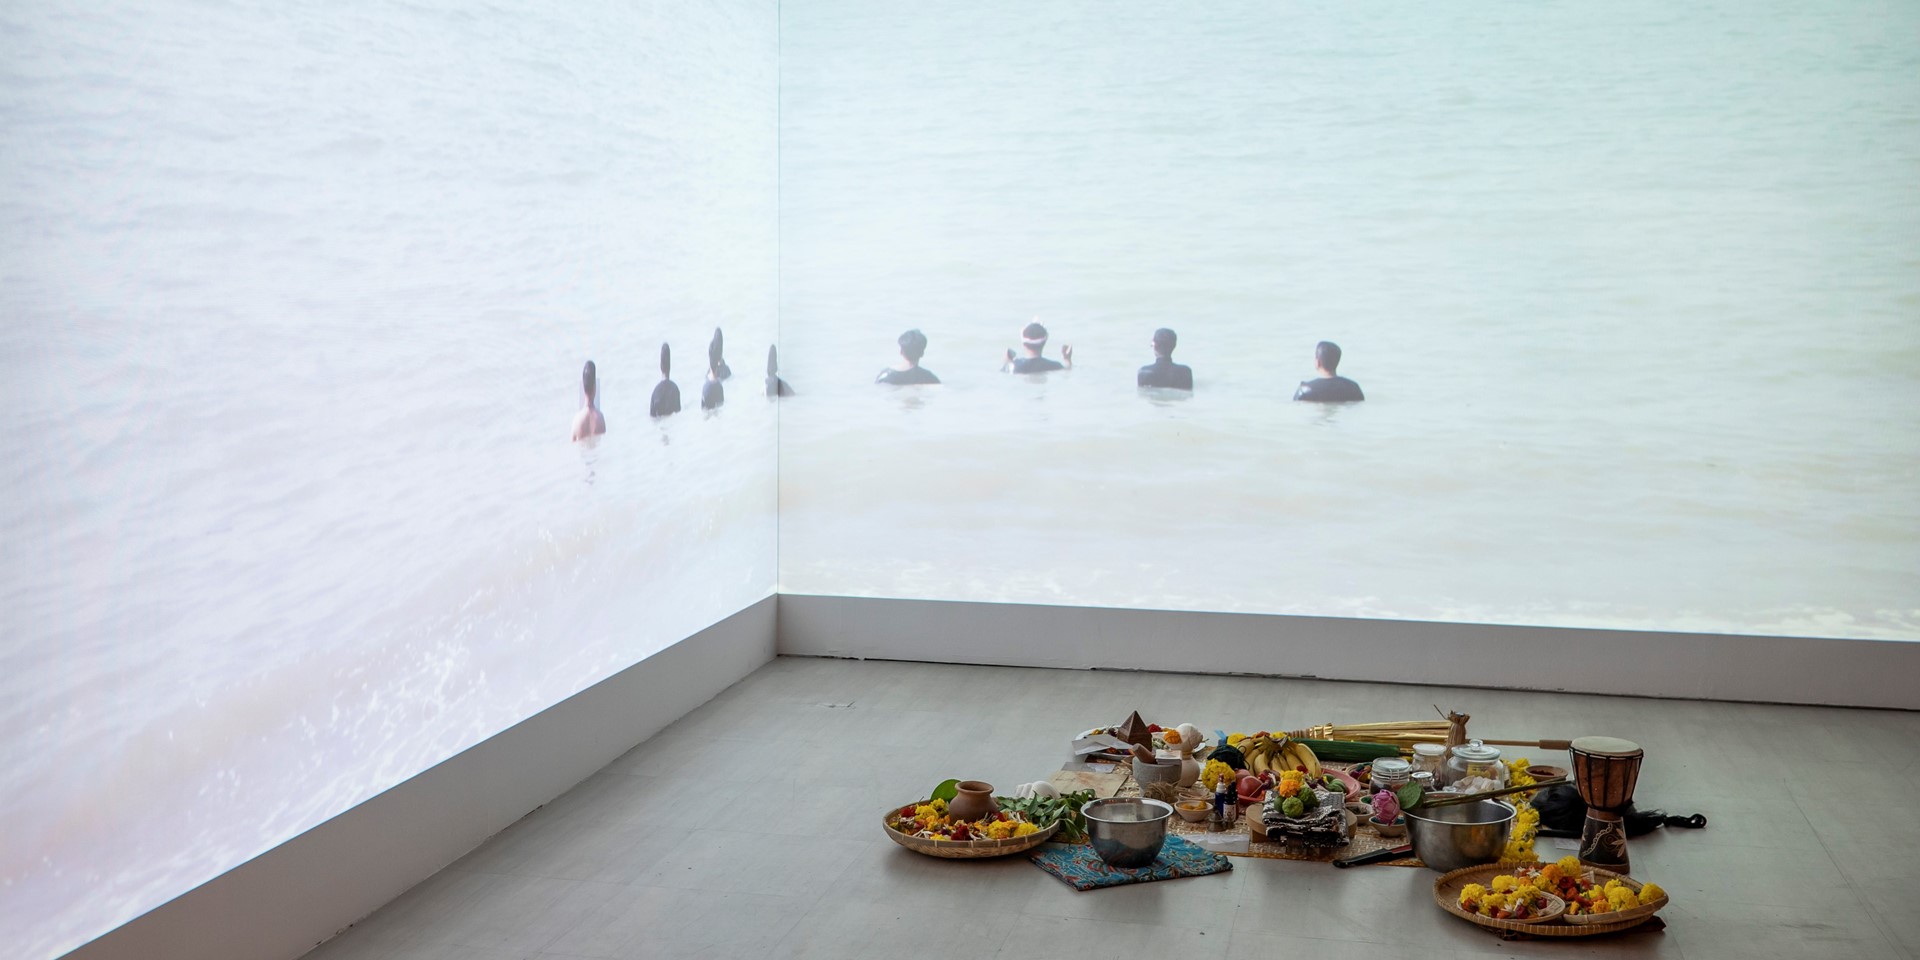 "Ku tahu asal usul mu. Yang laut balik ke laut. Yang darat balik ke darat" : A Closing Performance by Zarina Muhammad